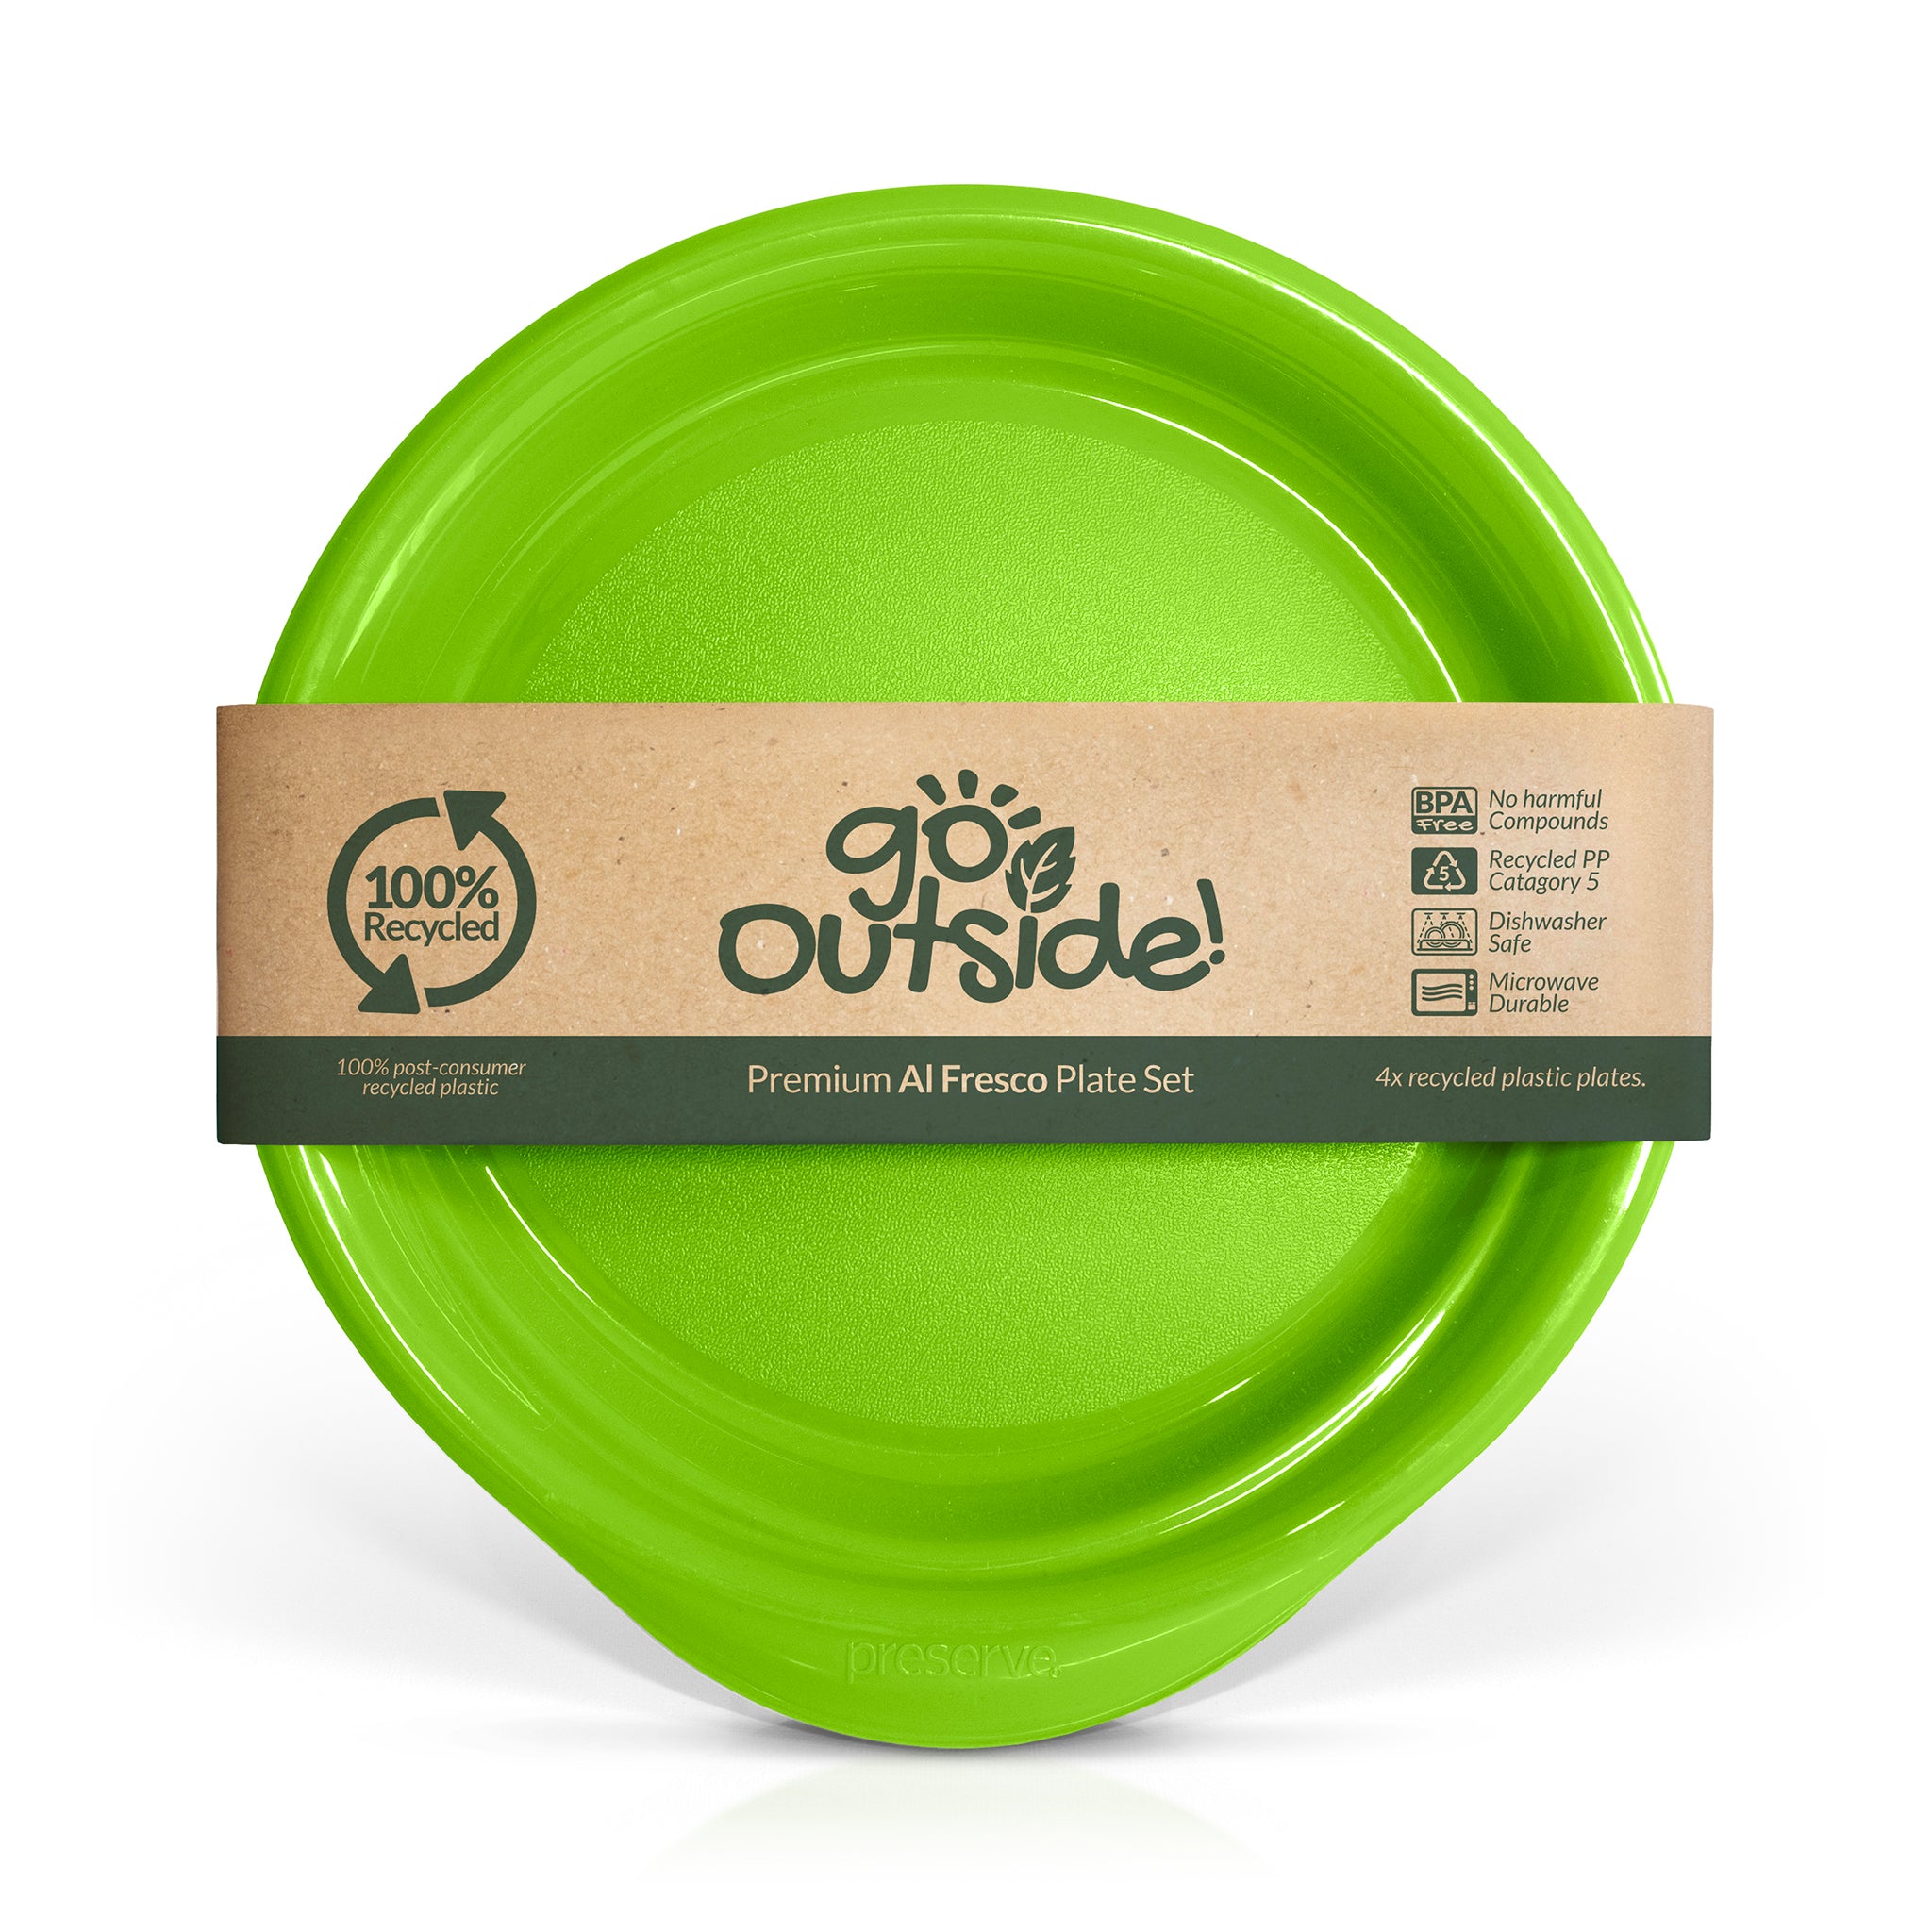 Reusable plastic dinner plate in green